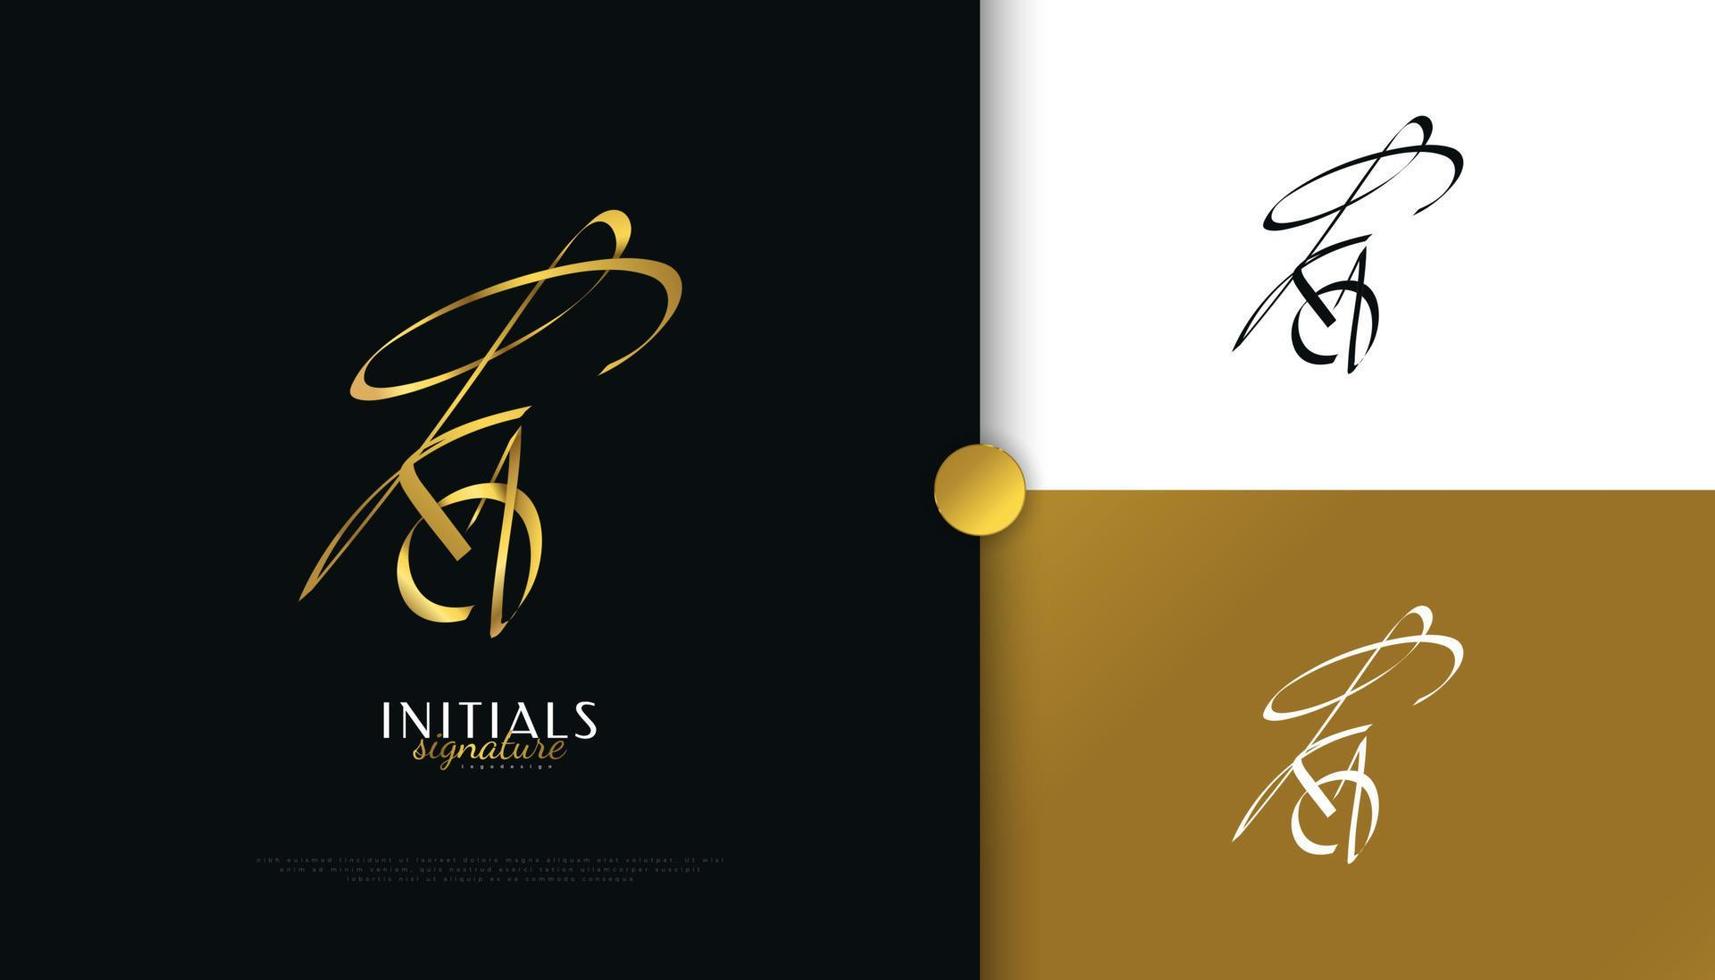 ka Initial-Signatur-Logo-Design mit elegantem und minimalistischem goldenem Handschriftstil. initial k und ein logo-design für hochzeit, mode, schmuck, boutique und geschäftsmarkenidentität vektor